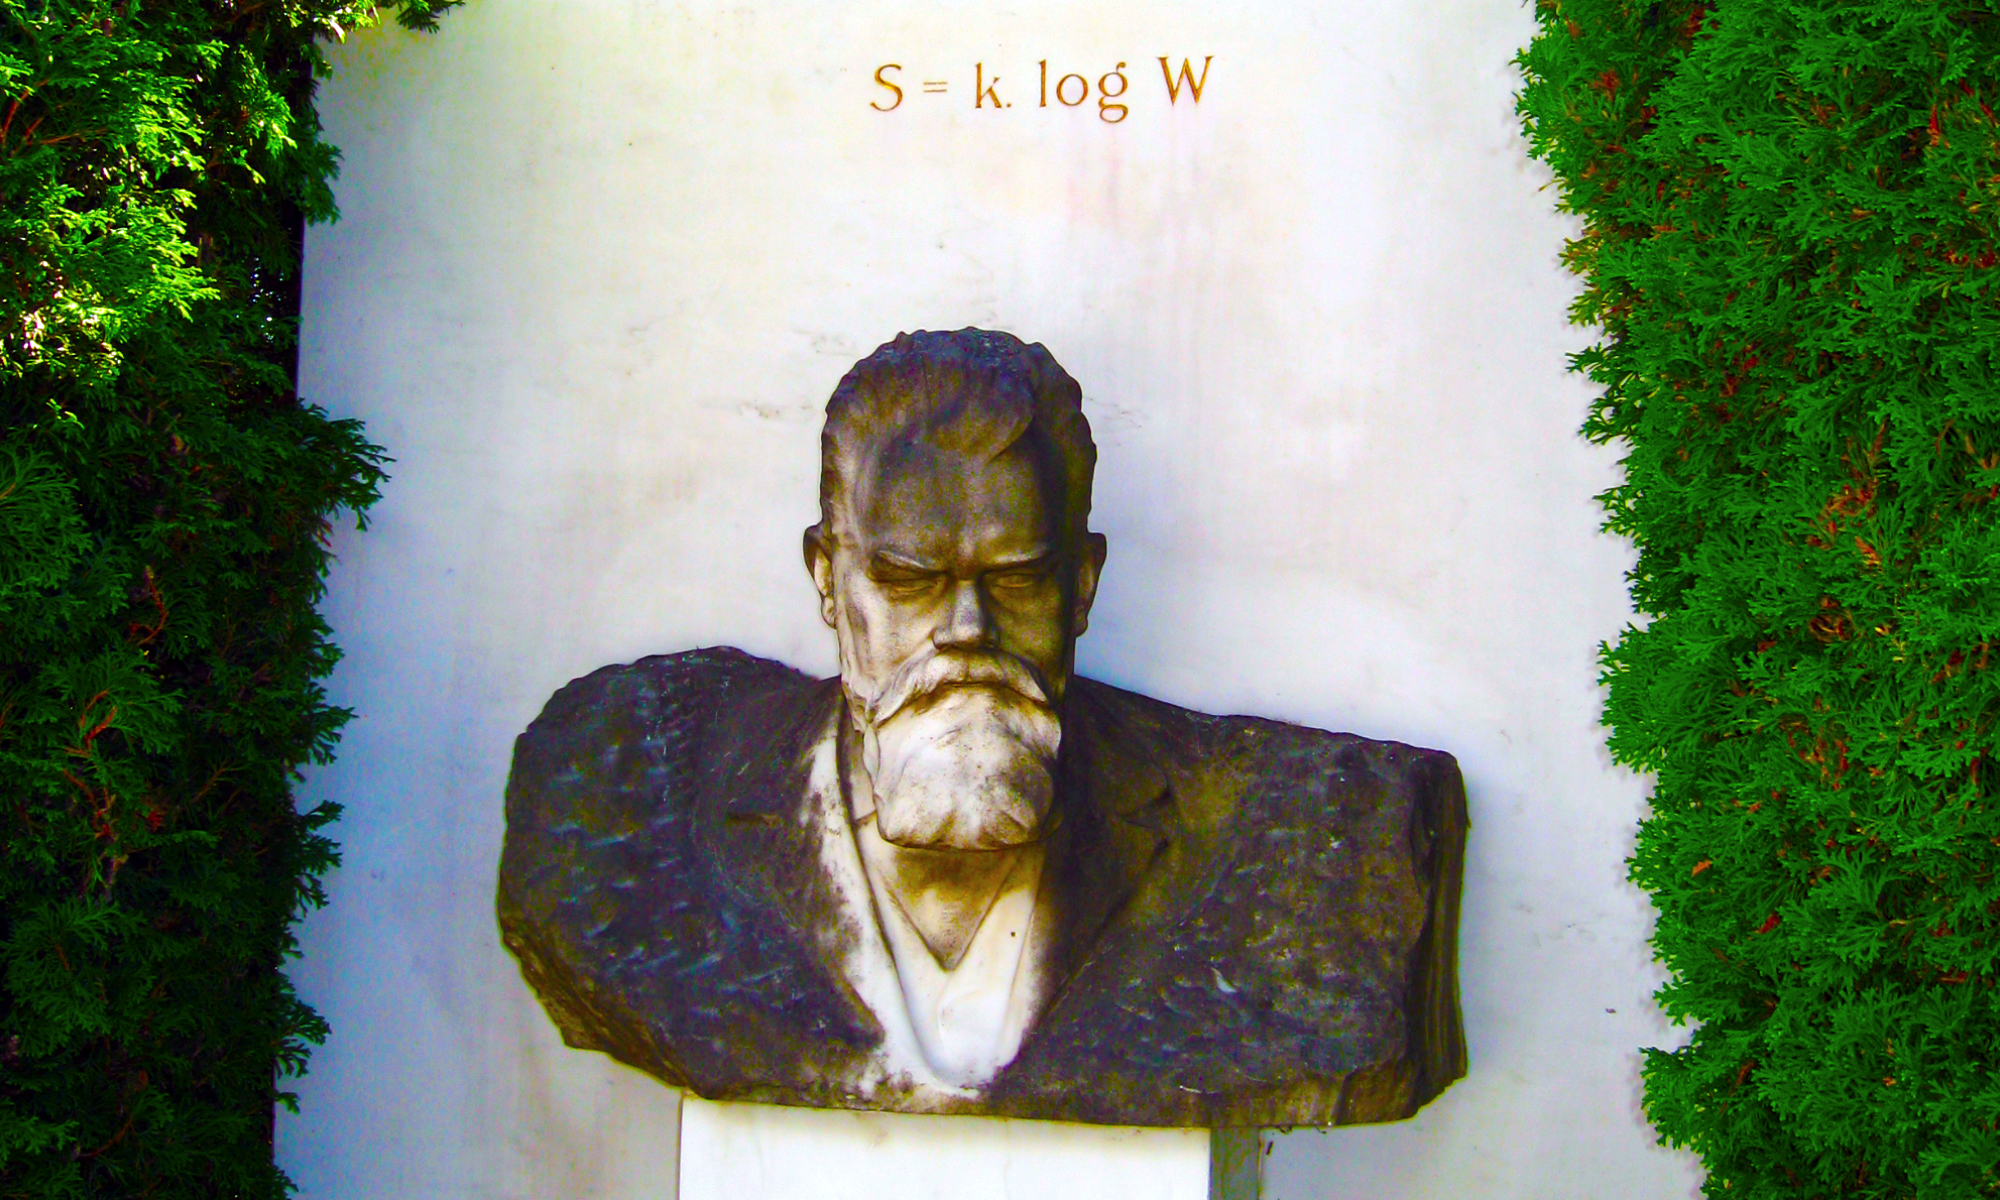 Ludwig Boltzmann Forum